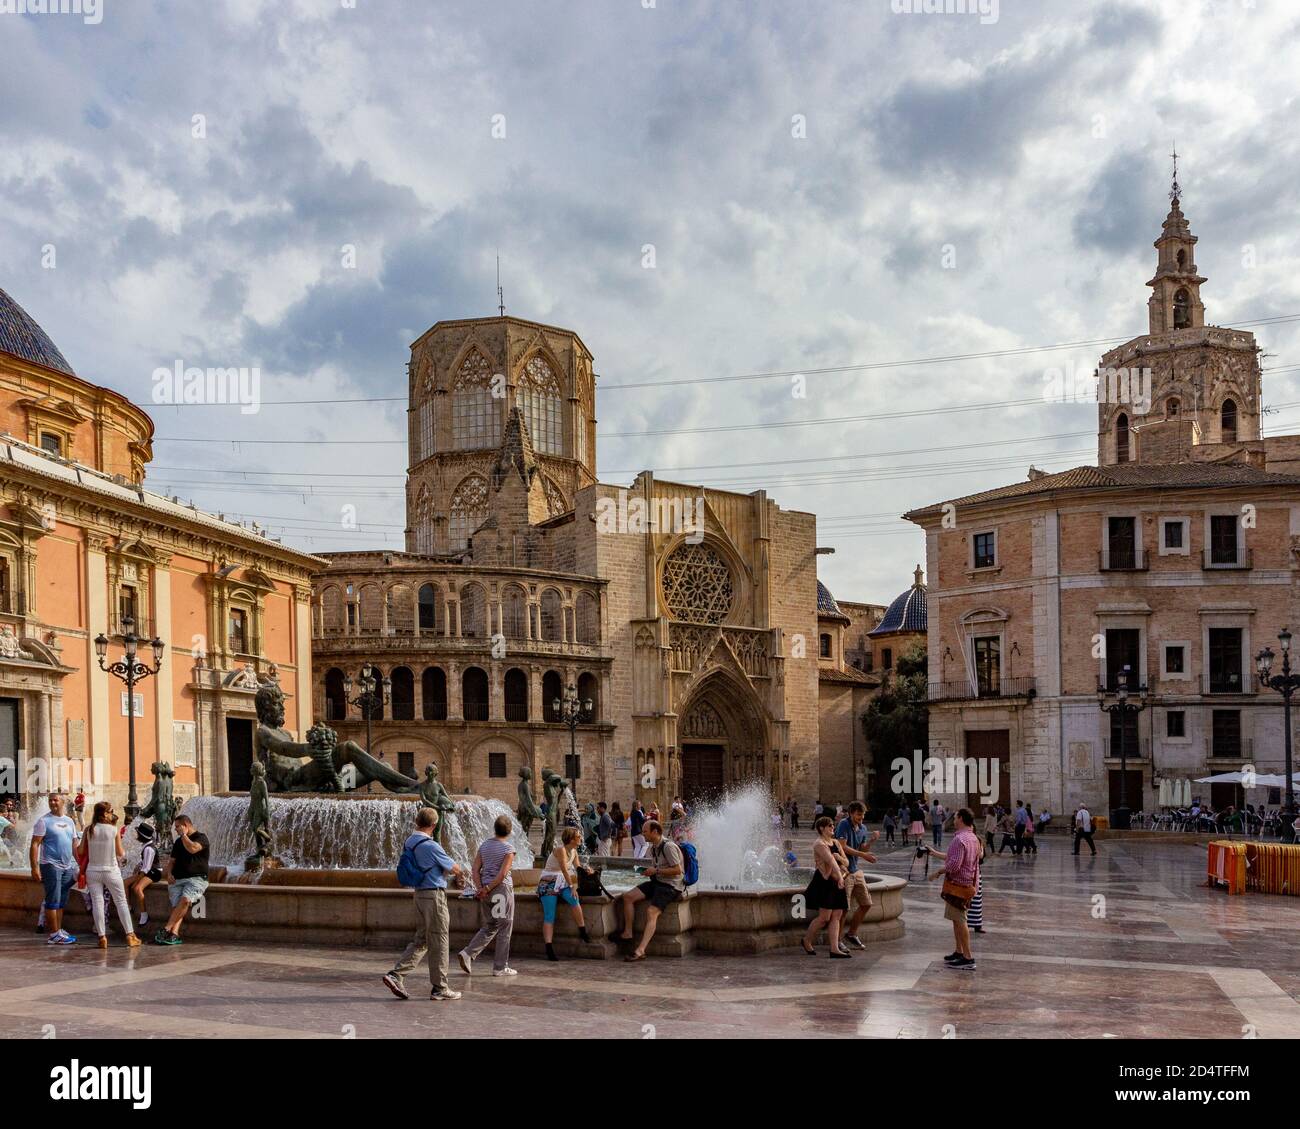 La Cattedrale di Valencia è visibile dietro la fontana nel mezzo della piazza della Vergine a Valencia, in Spagna Foto Stock